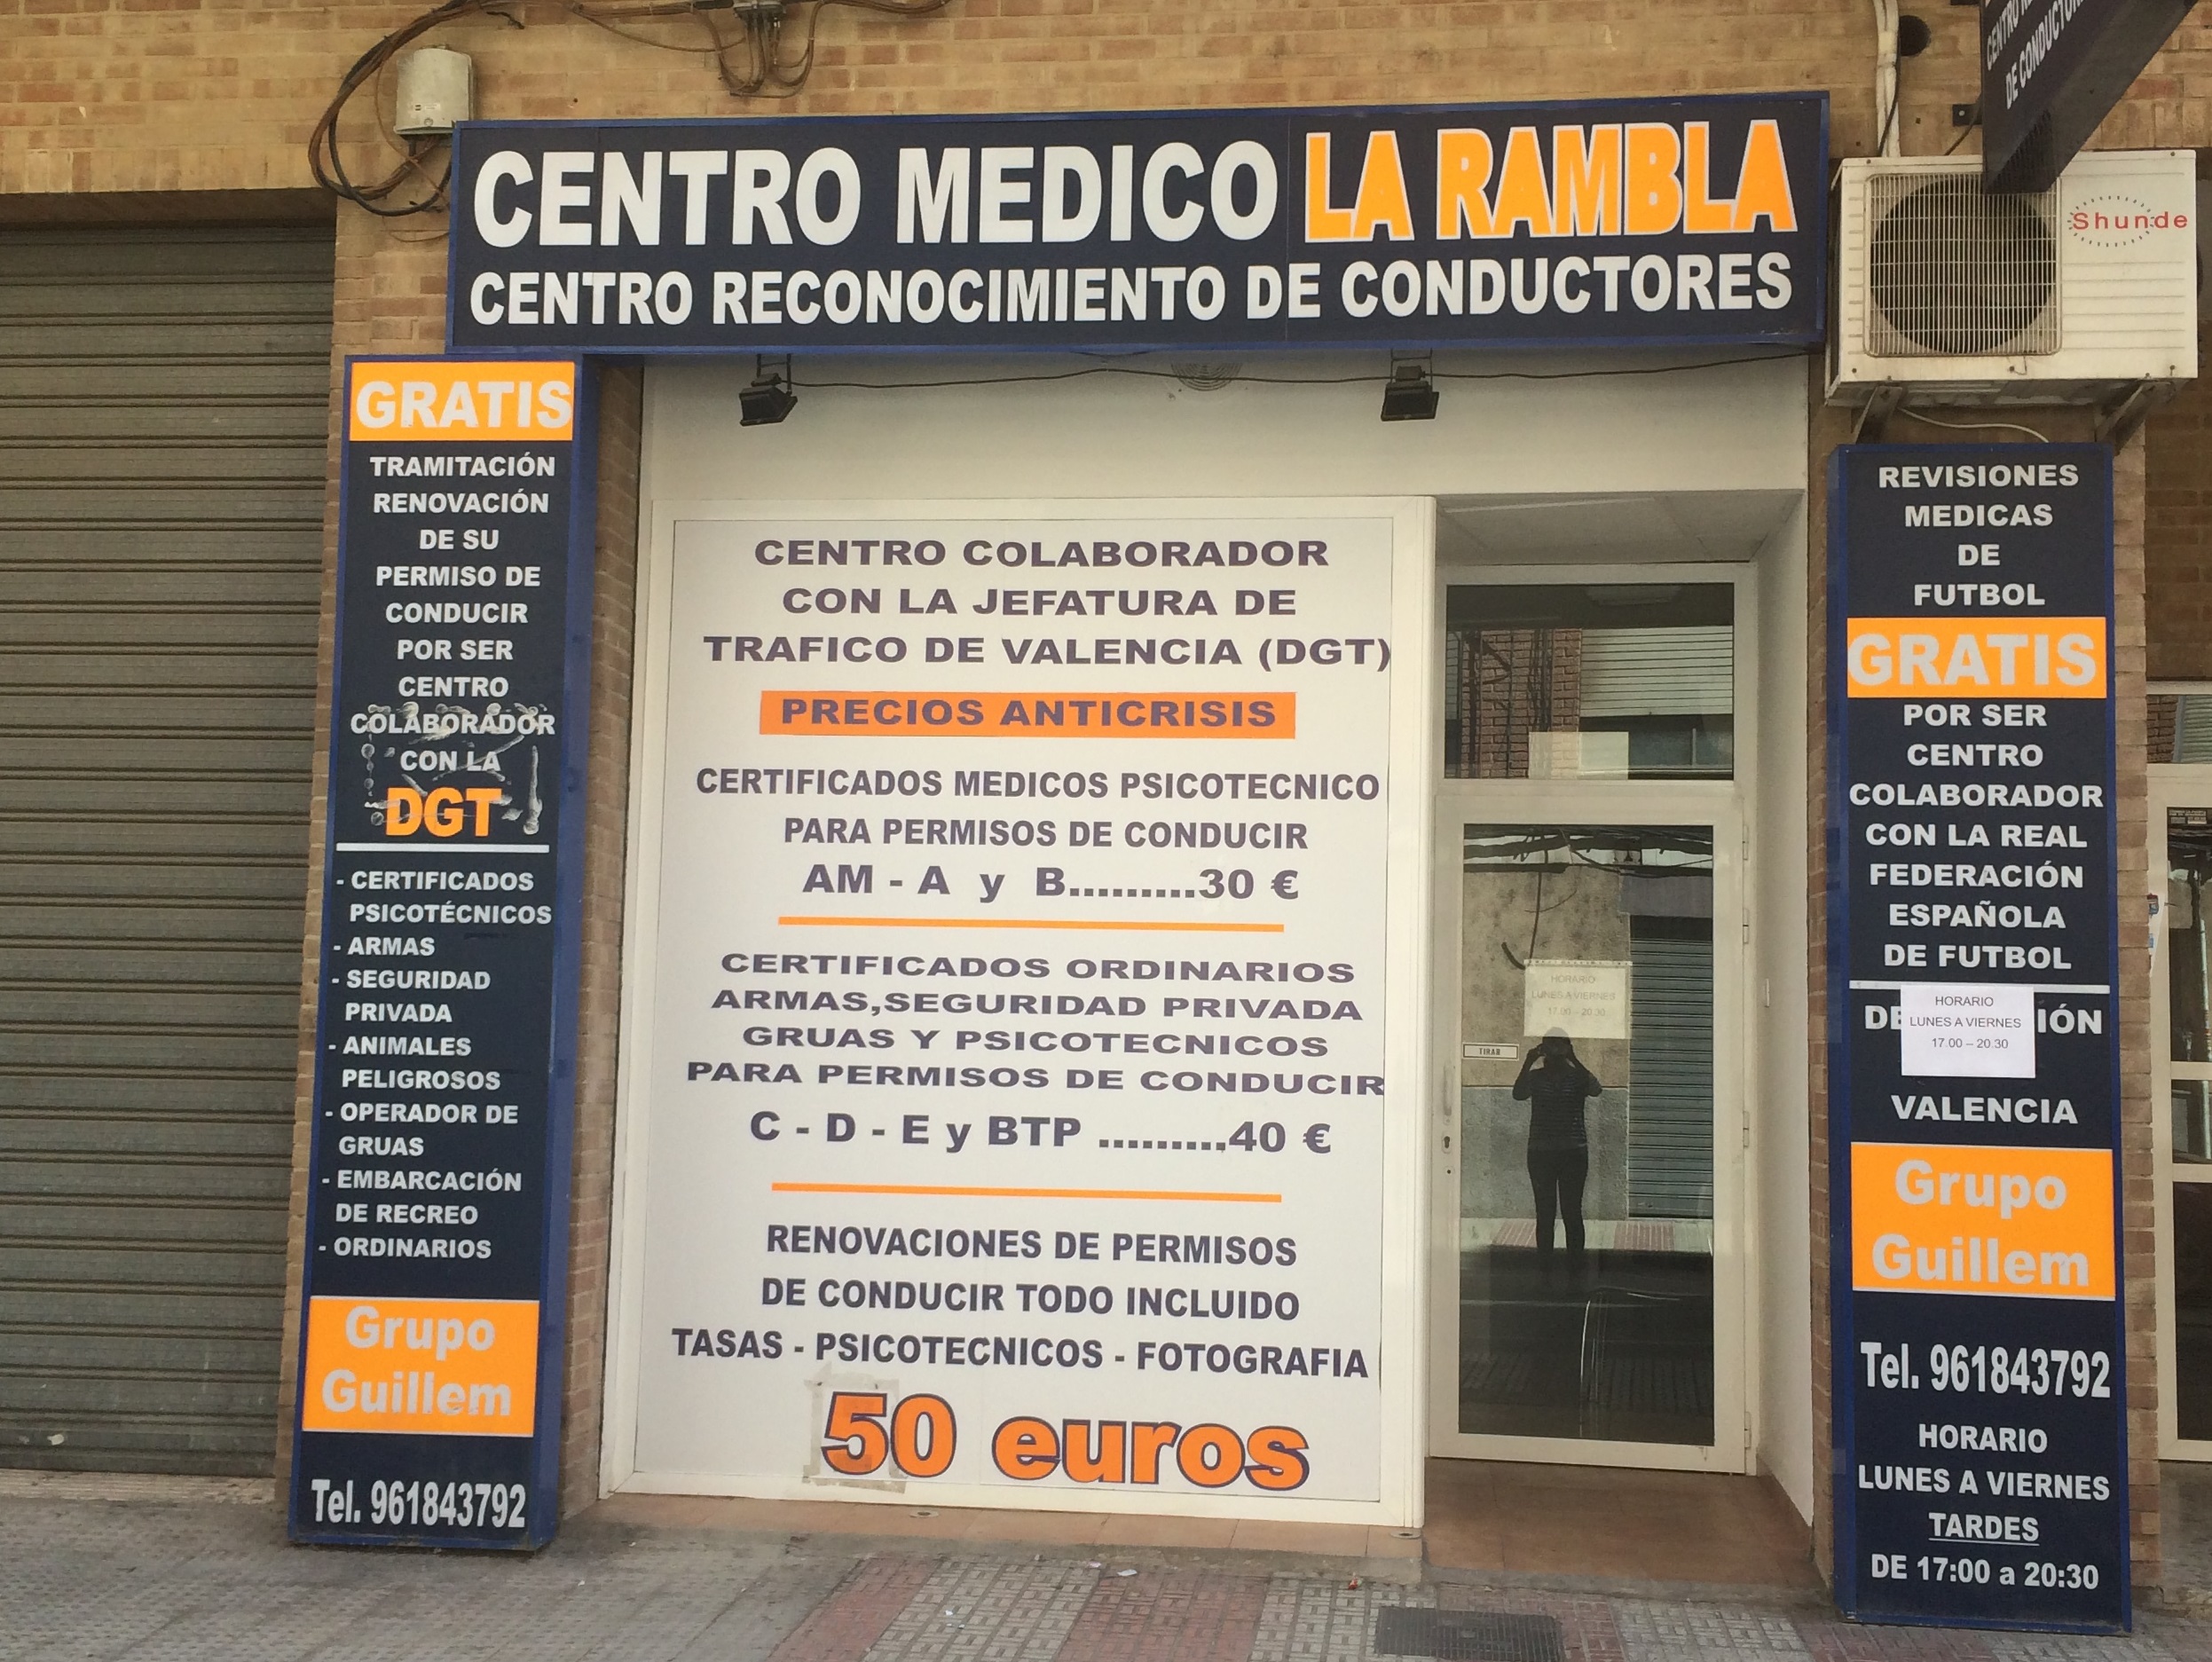 Centro Médico La rambla